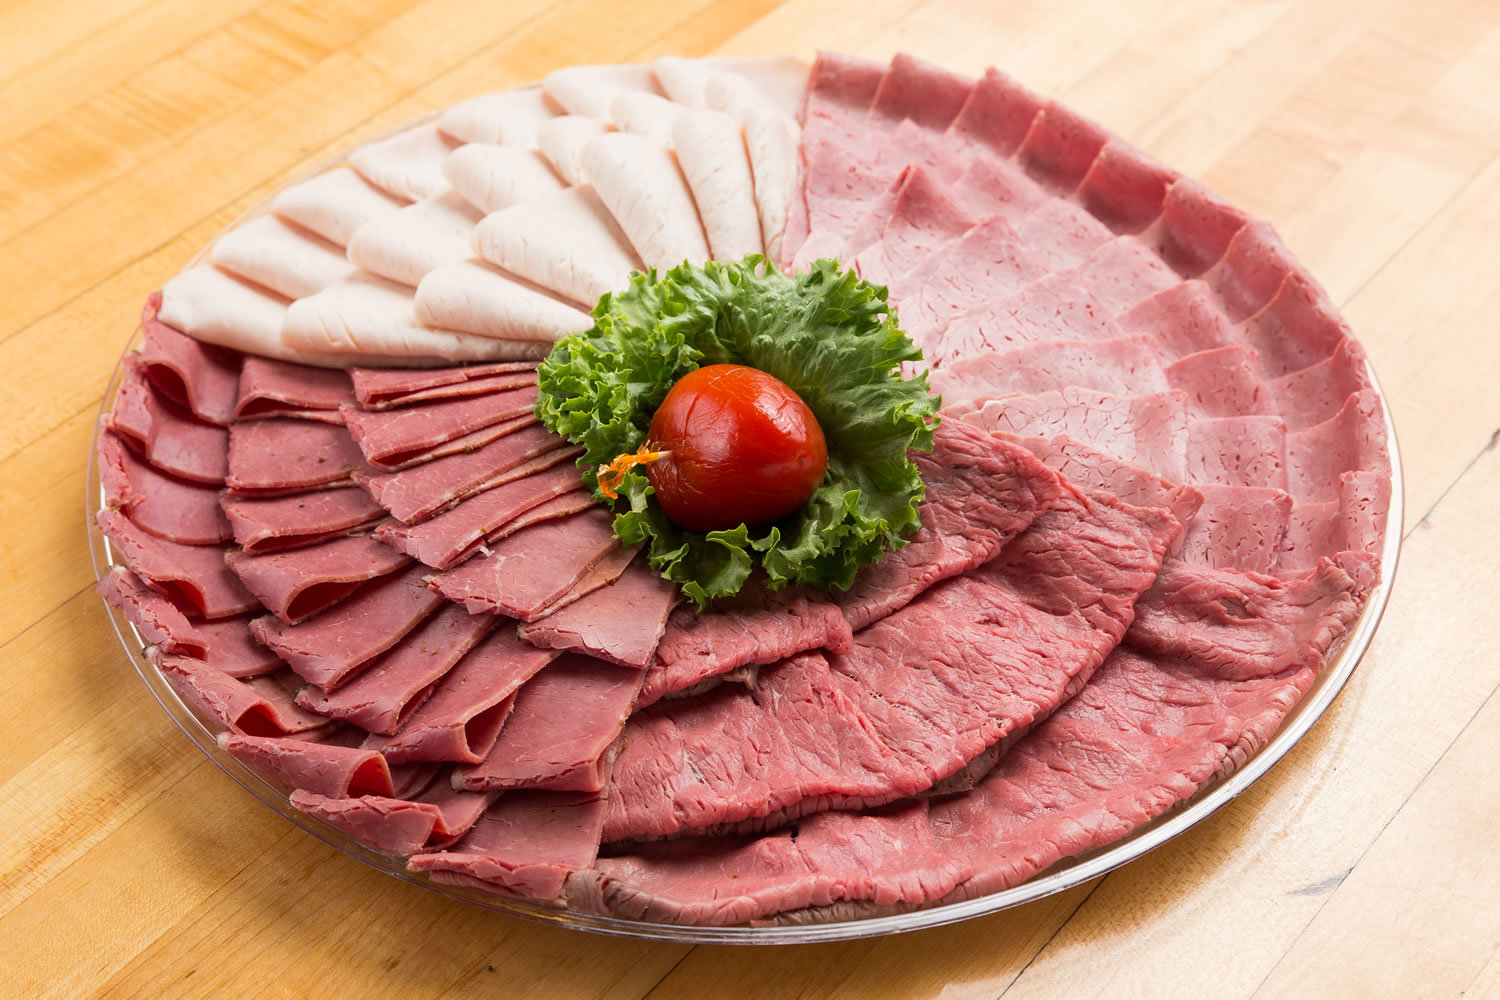 Meat Platter